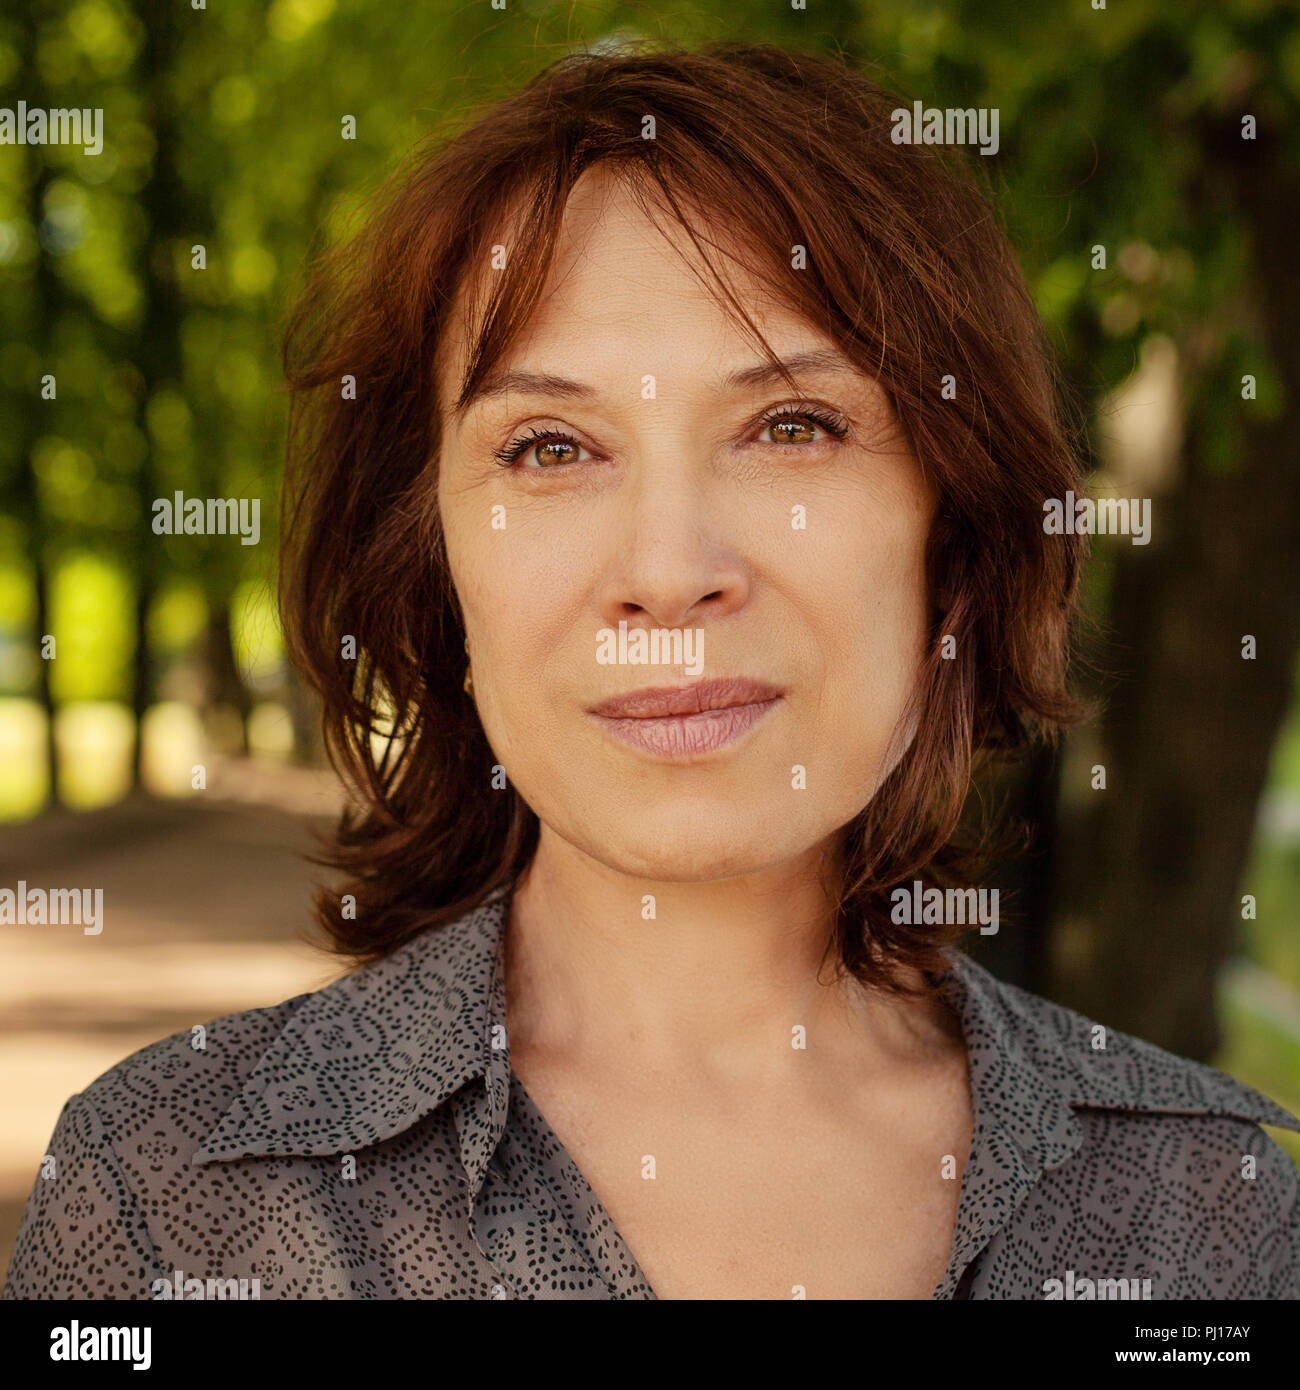 Closeup portrait of young woman. Visage de femme de young lady outdoors Banque D'Images